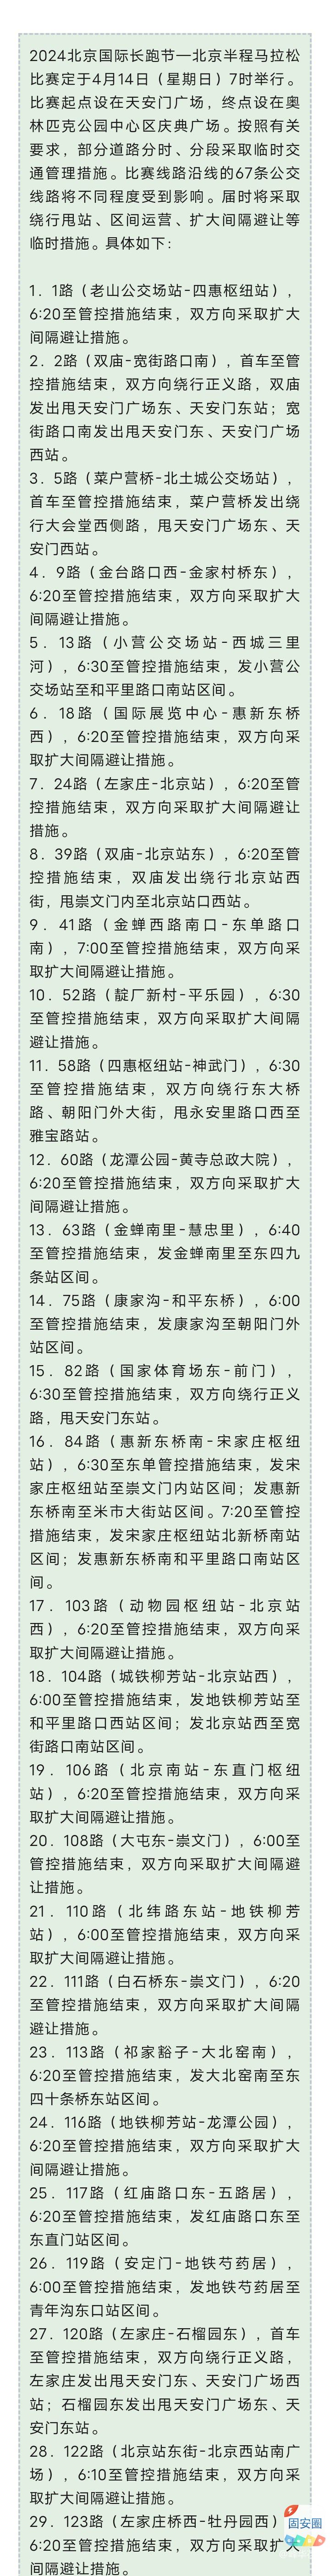 2024北京国际长跑节，明天比赛期间67条公交线路采取临时运营措施7338 作者:峰华花园 帖子ID:300810 